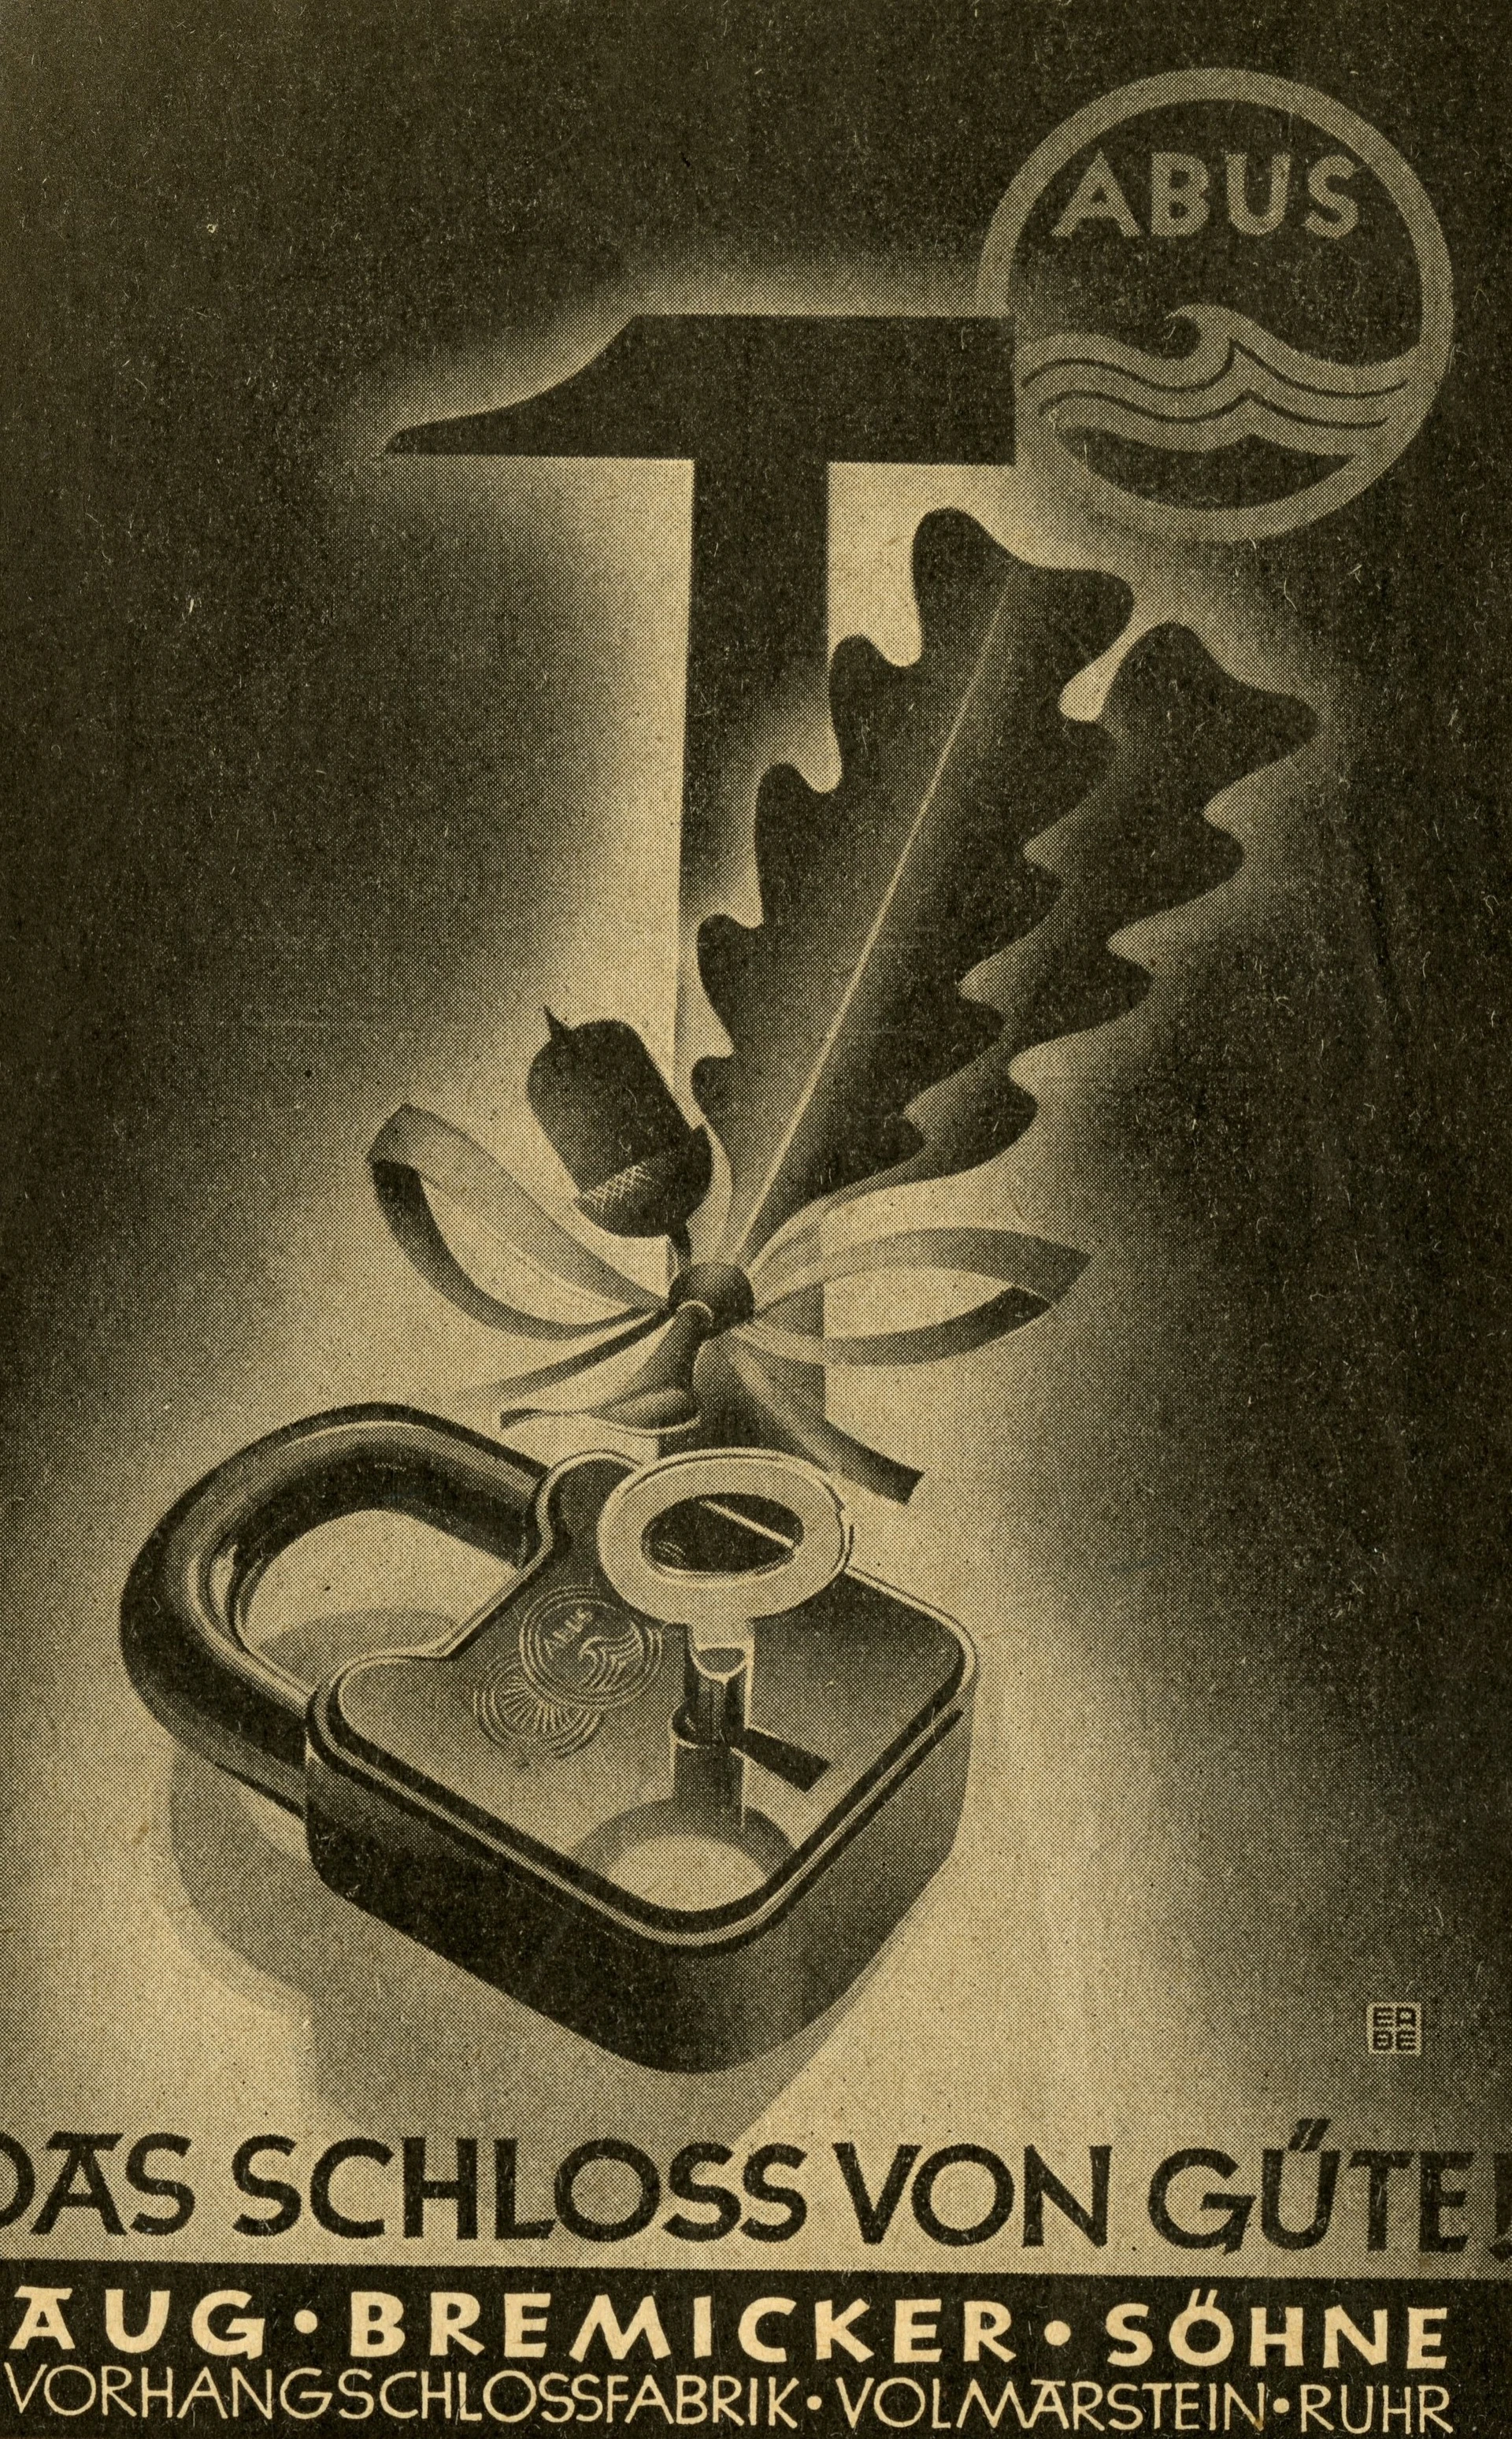 Ein dunkel gestaltetes Plakat auf dem ein Vorhangschloss gemeinsam mit einem Eichelzweig und einem Hammer abgebildet ist, mit der Aufschrift "Das Schloss von Güte!" © ABUS